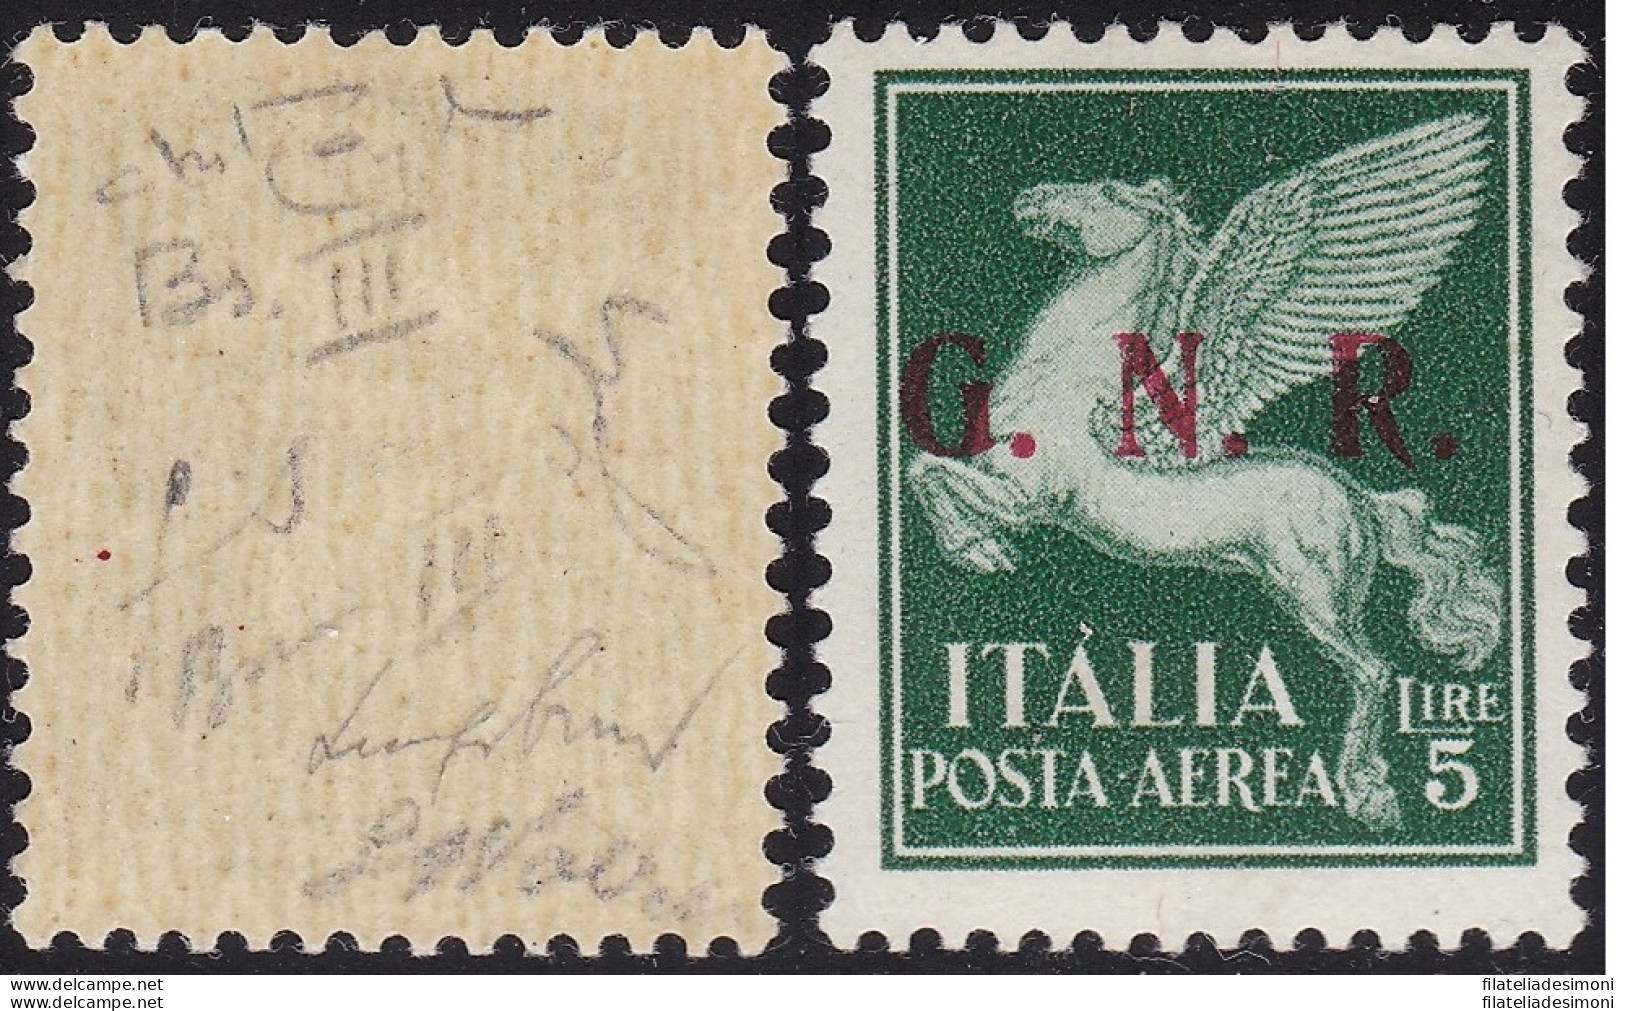 1943 Repubblica Sociale Italiana, GNR Posta Aerea N° 123/III Brescia GOMMA INTE - Mint/hinged